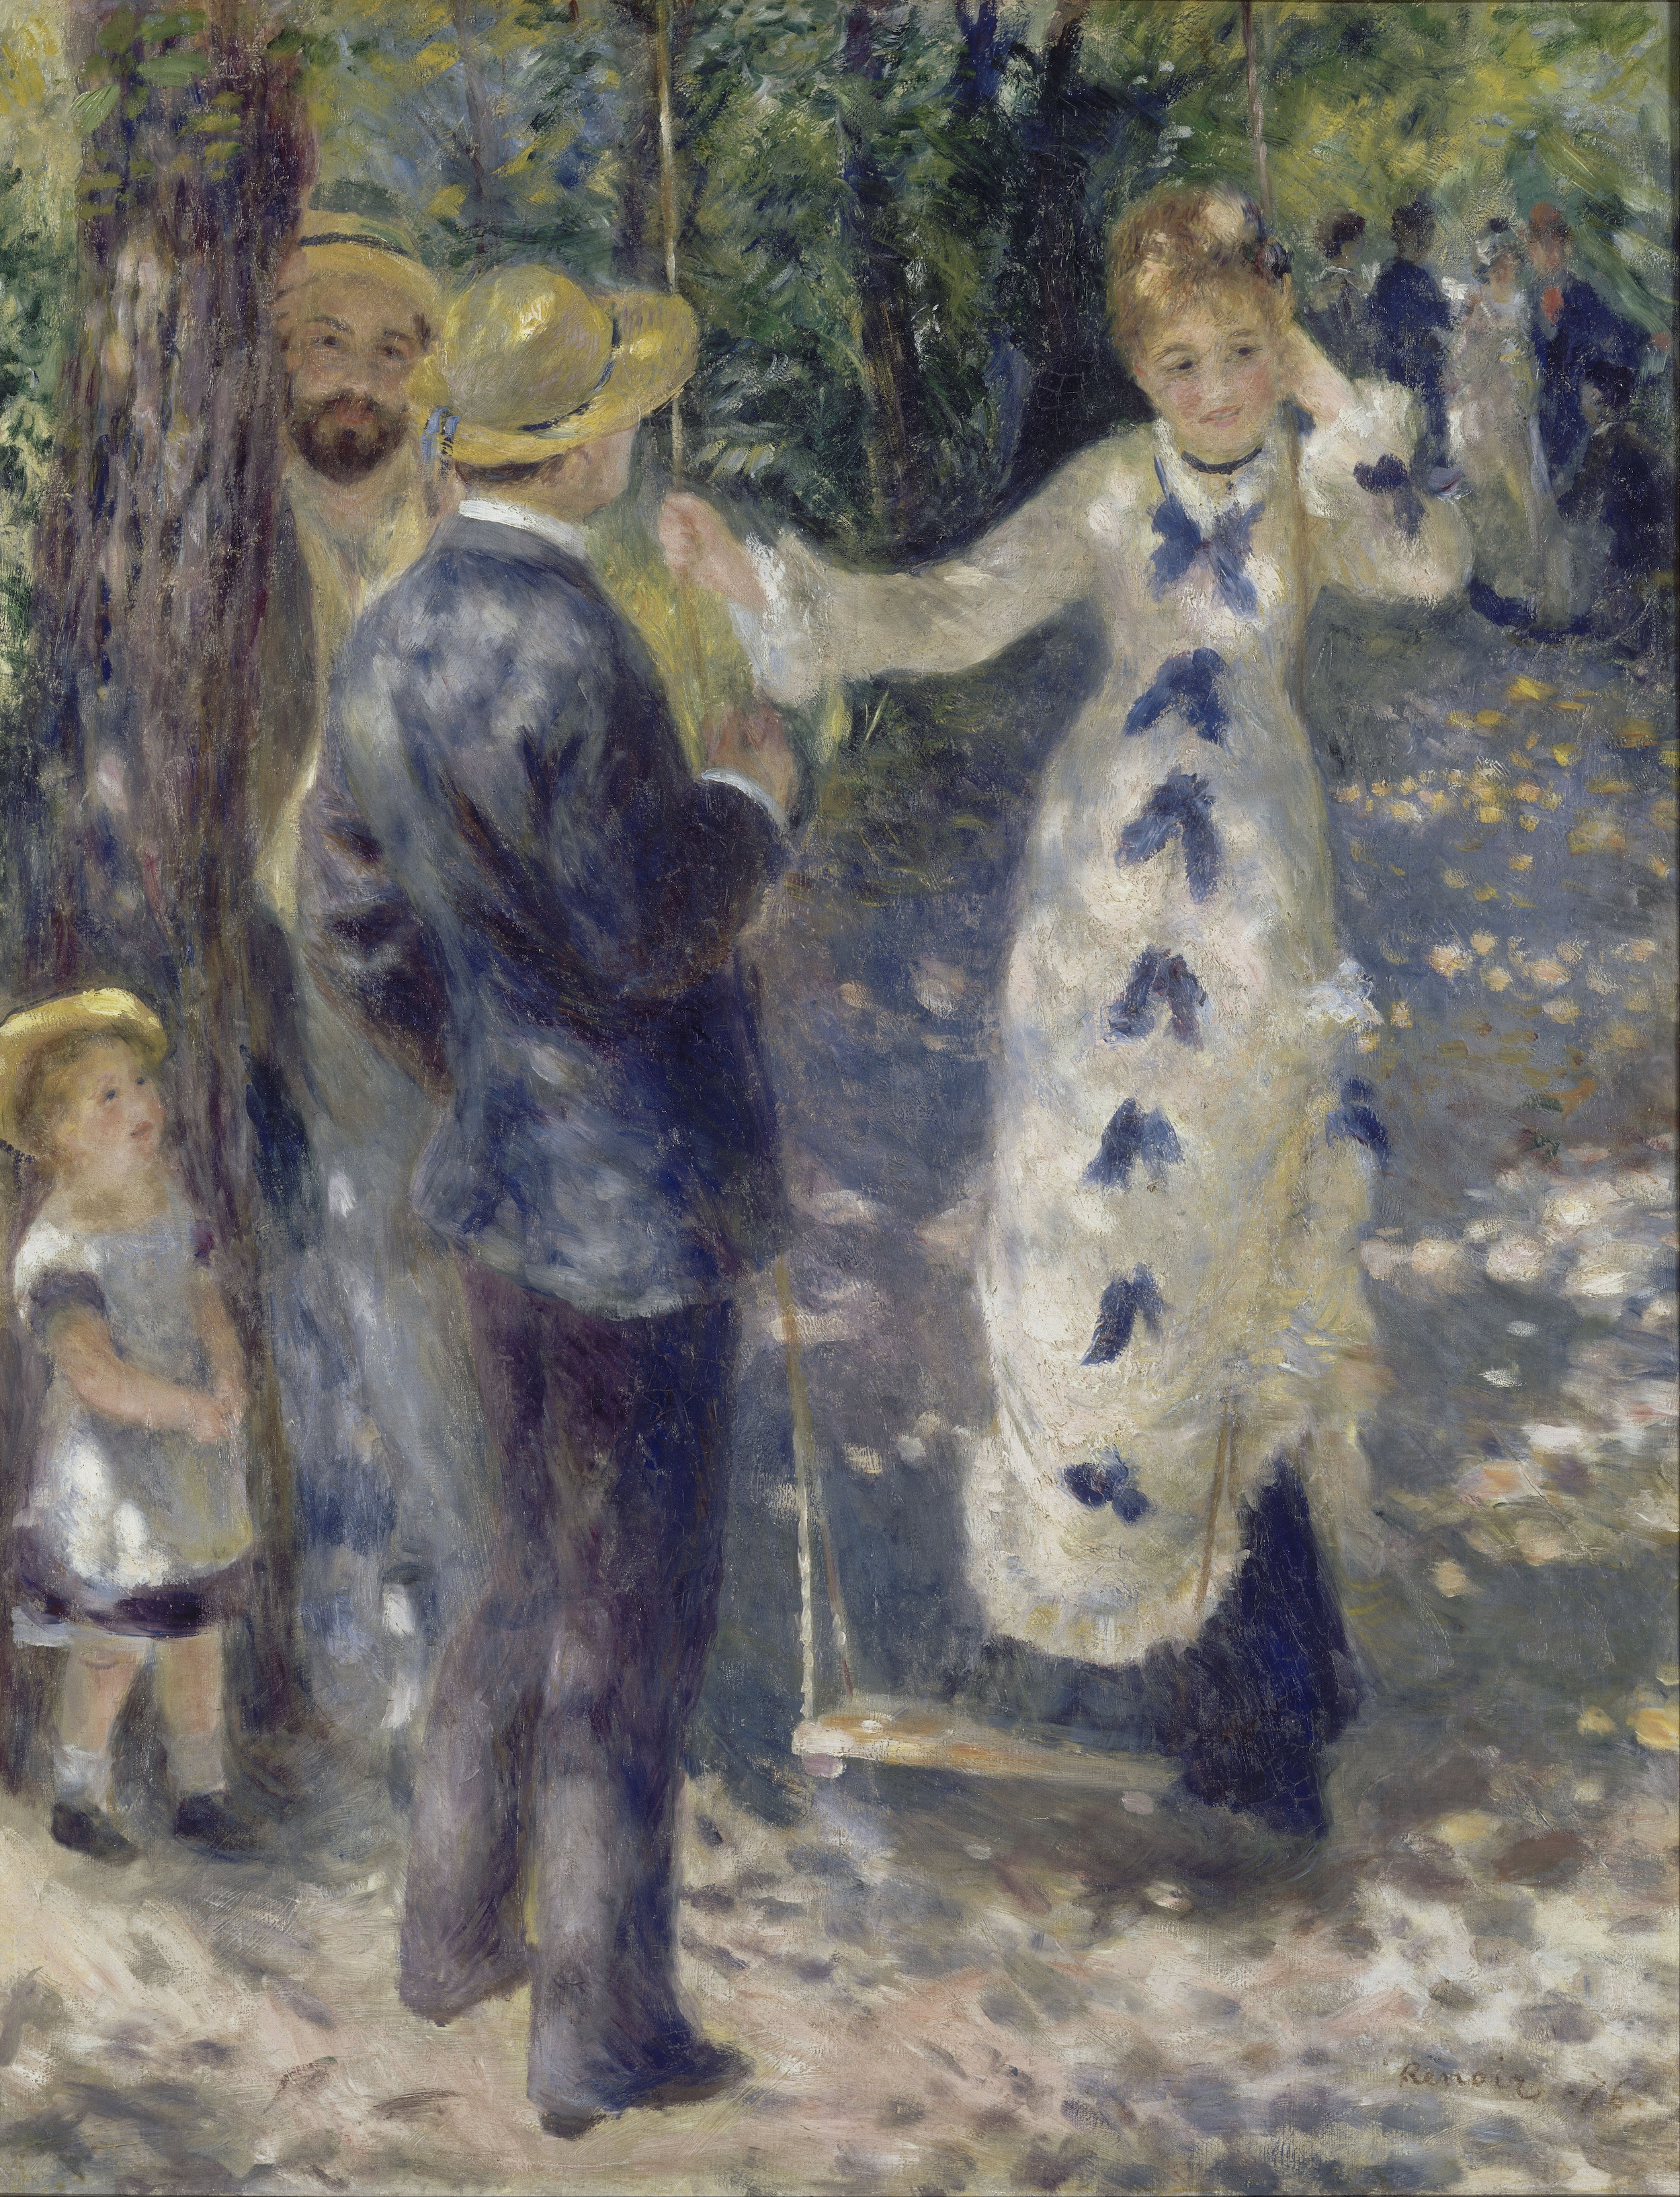 O Balanço by Pierre-Auguste Renoir - 1876 - 92 x 73 cm Musée d'Orsay